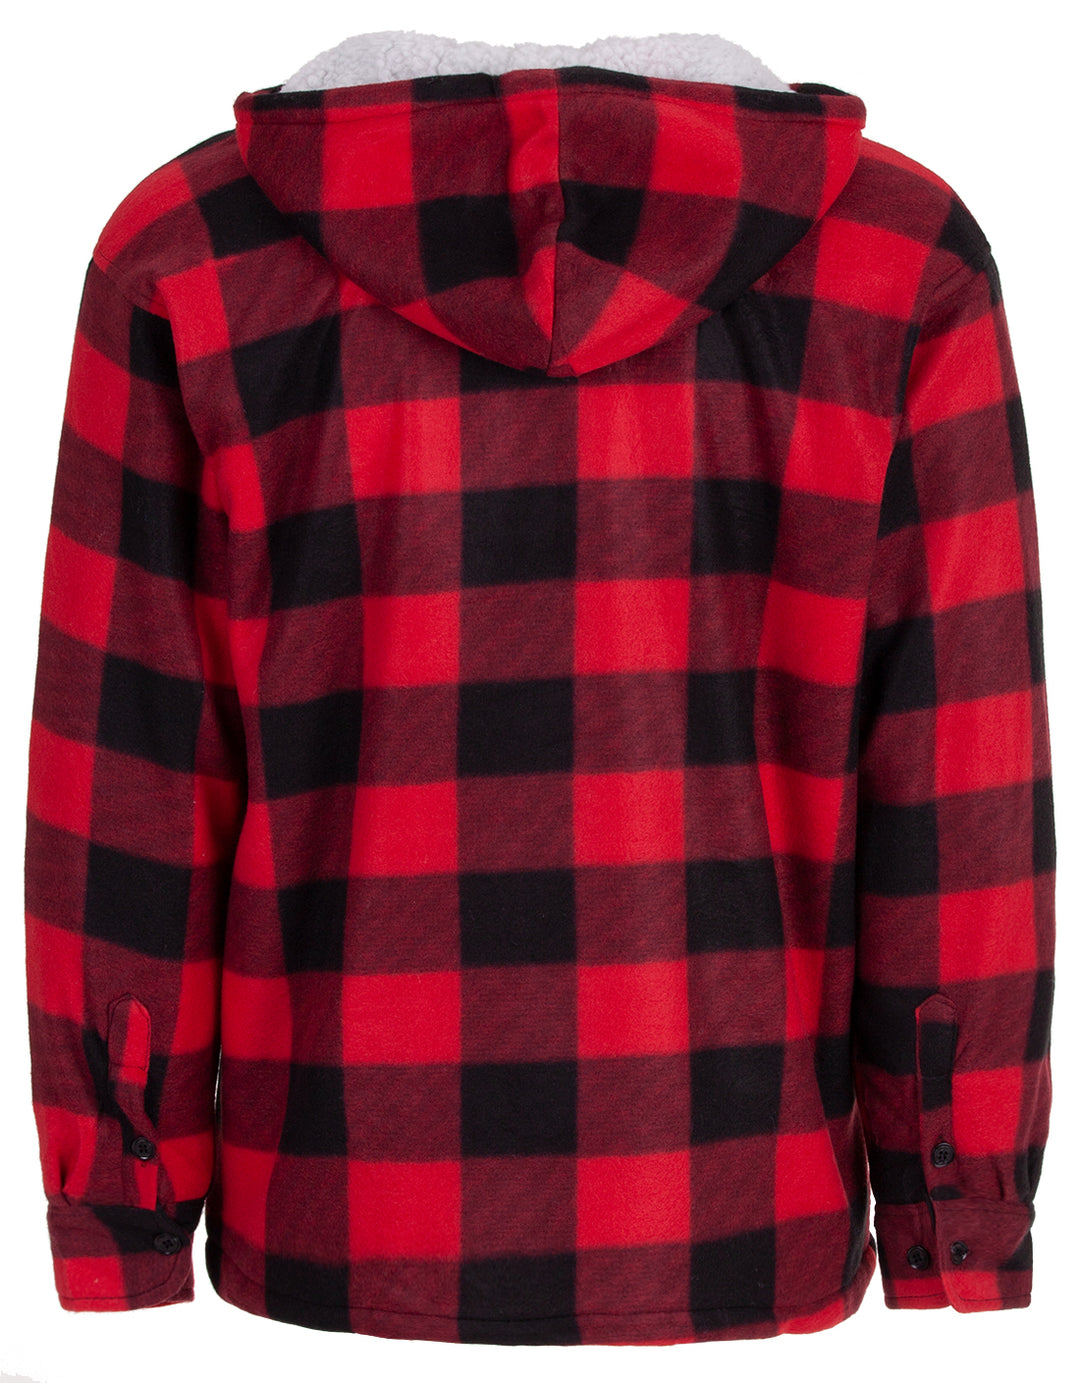 Thermal jacket hoodie - lumberjack checkered